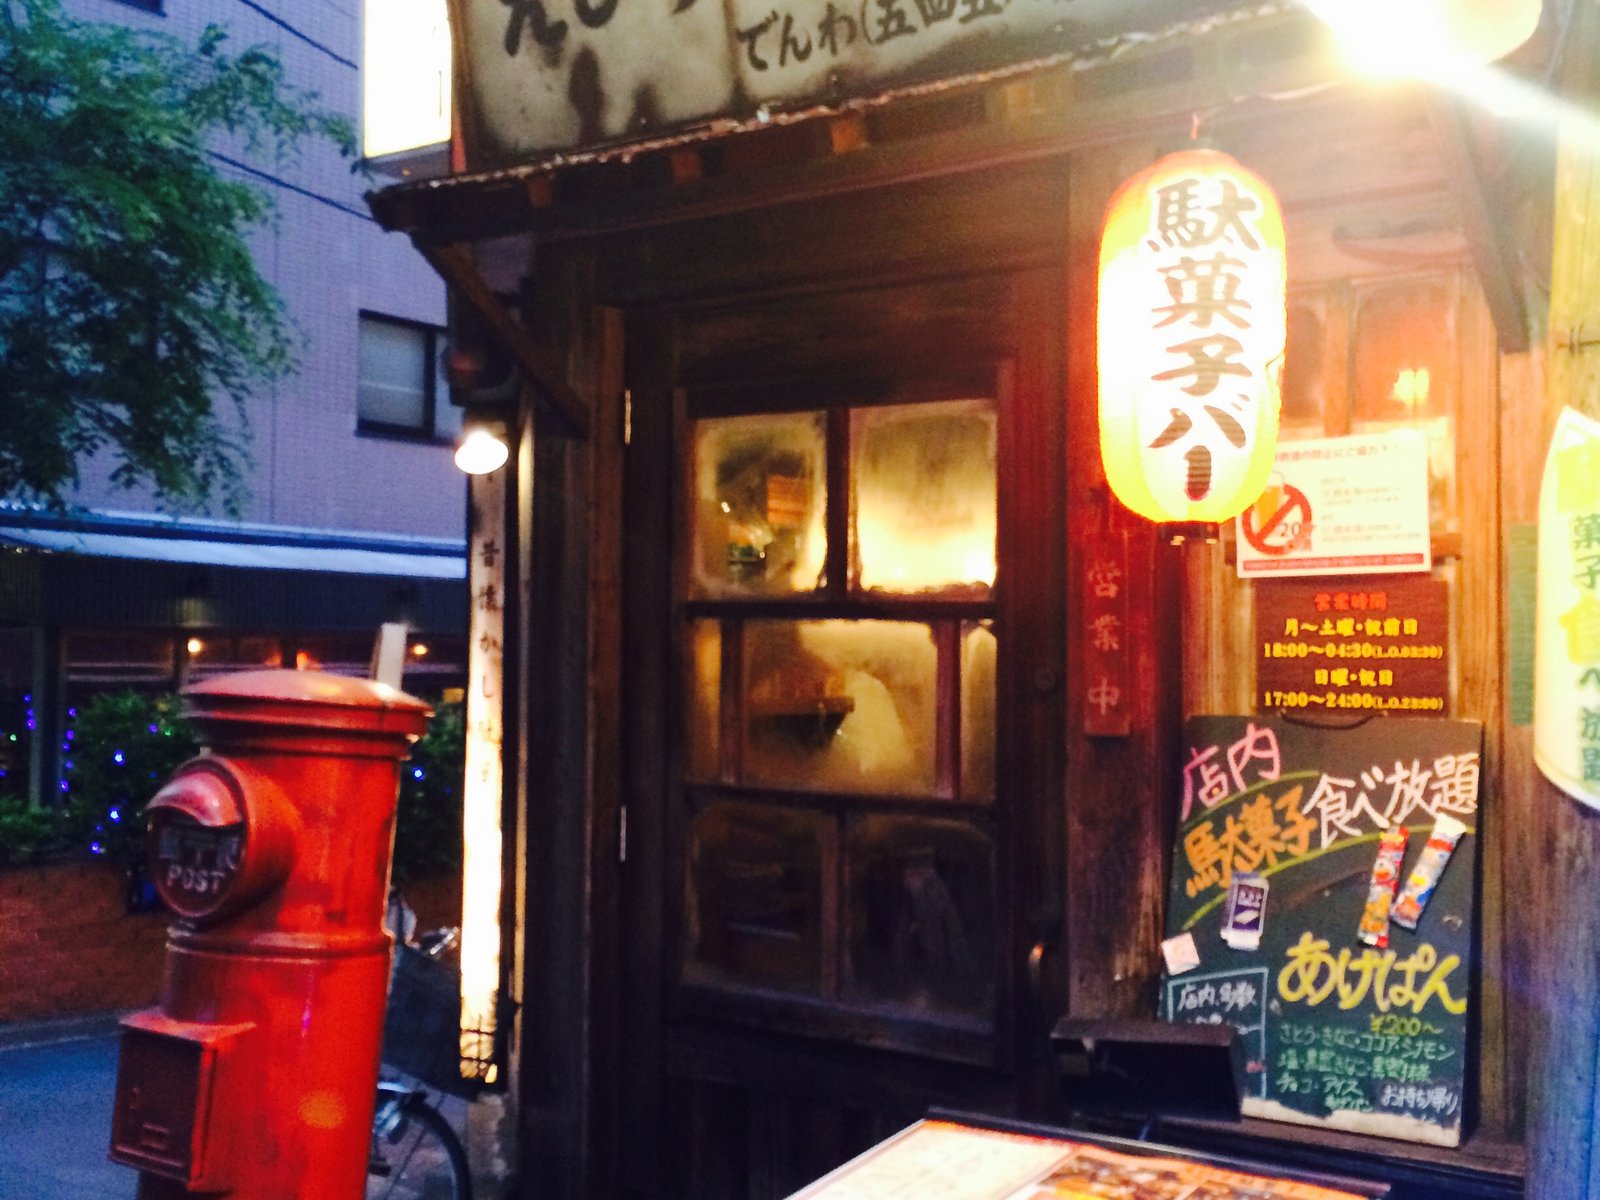 恵比寿で昭和を感じる居酒屋めぐり コスパも最高 家族でも行けるおすすめのレトロな居酒屋さん Playlife プレイライフ